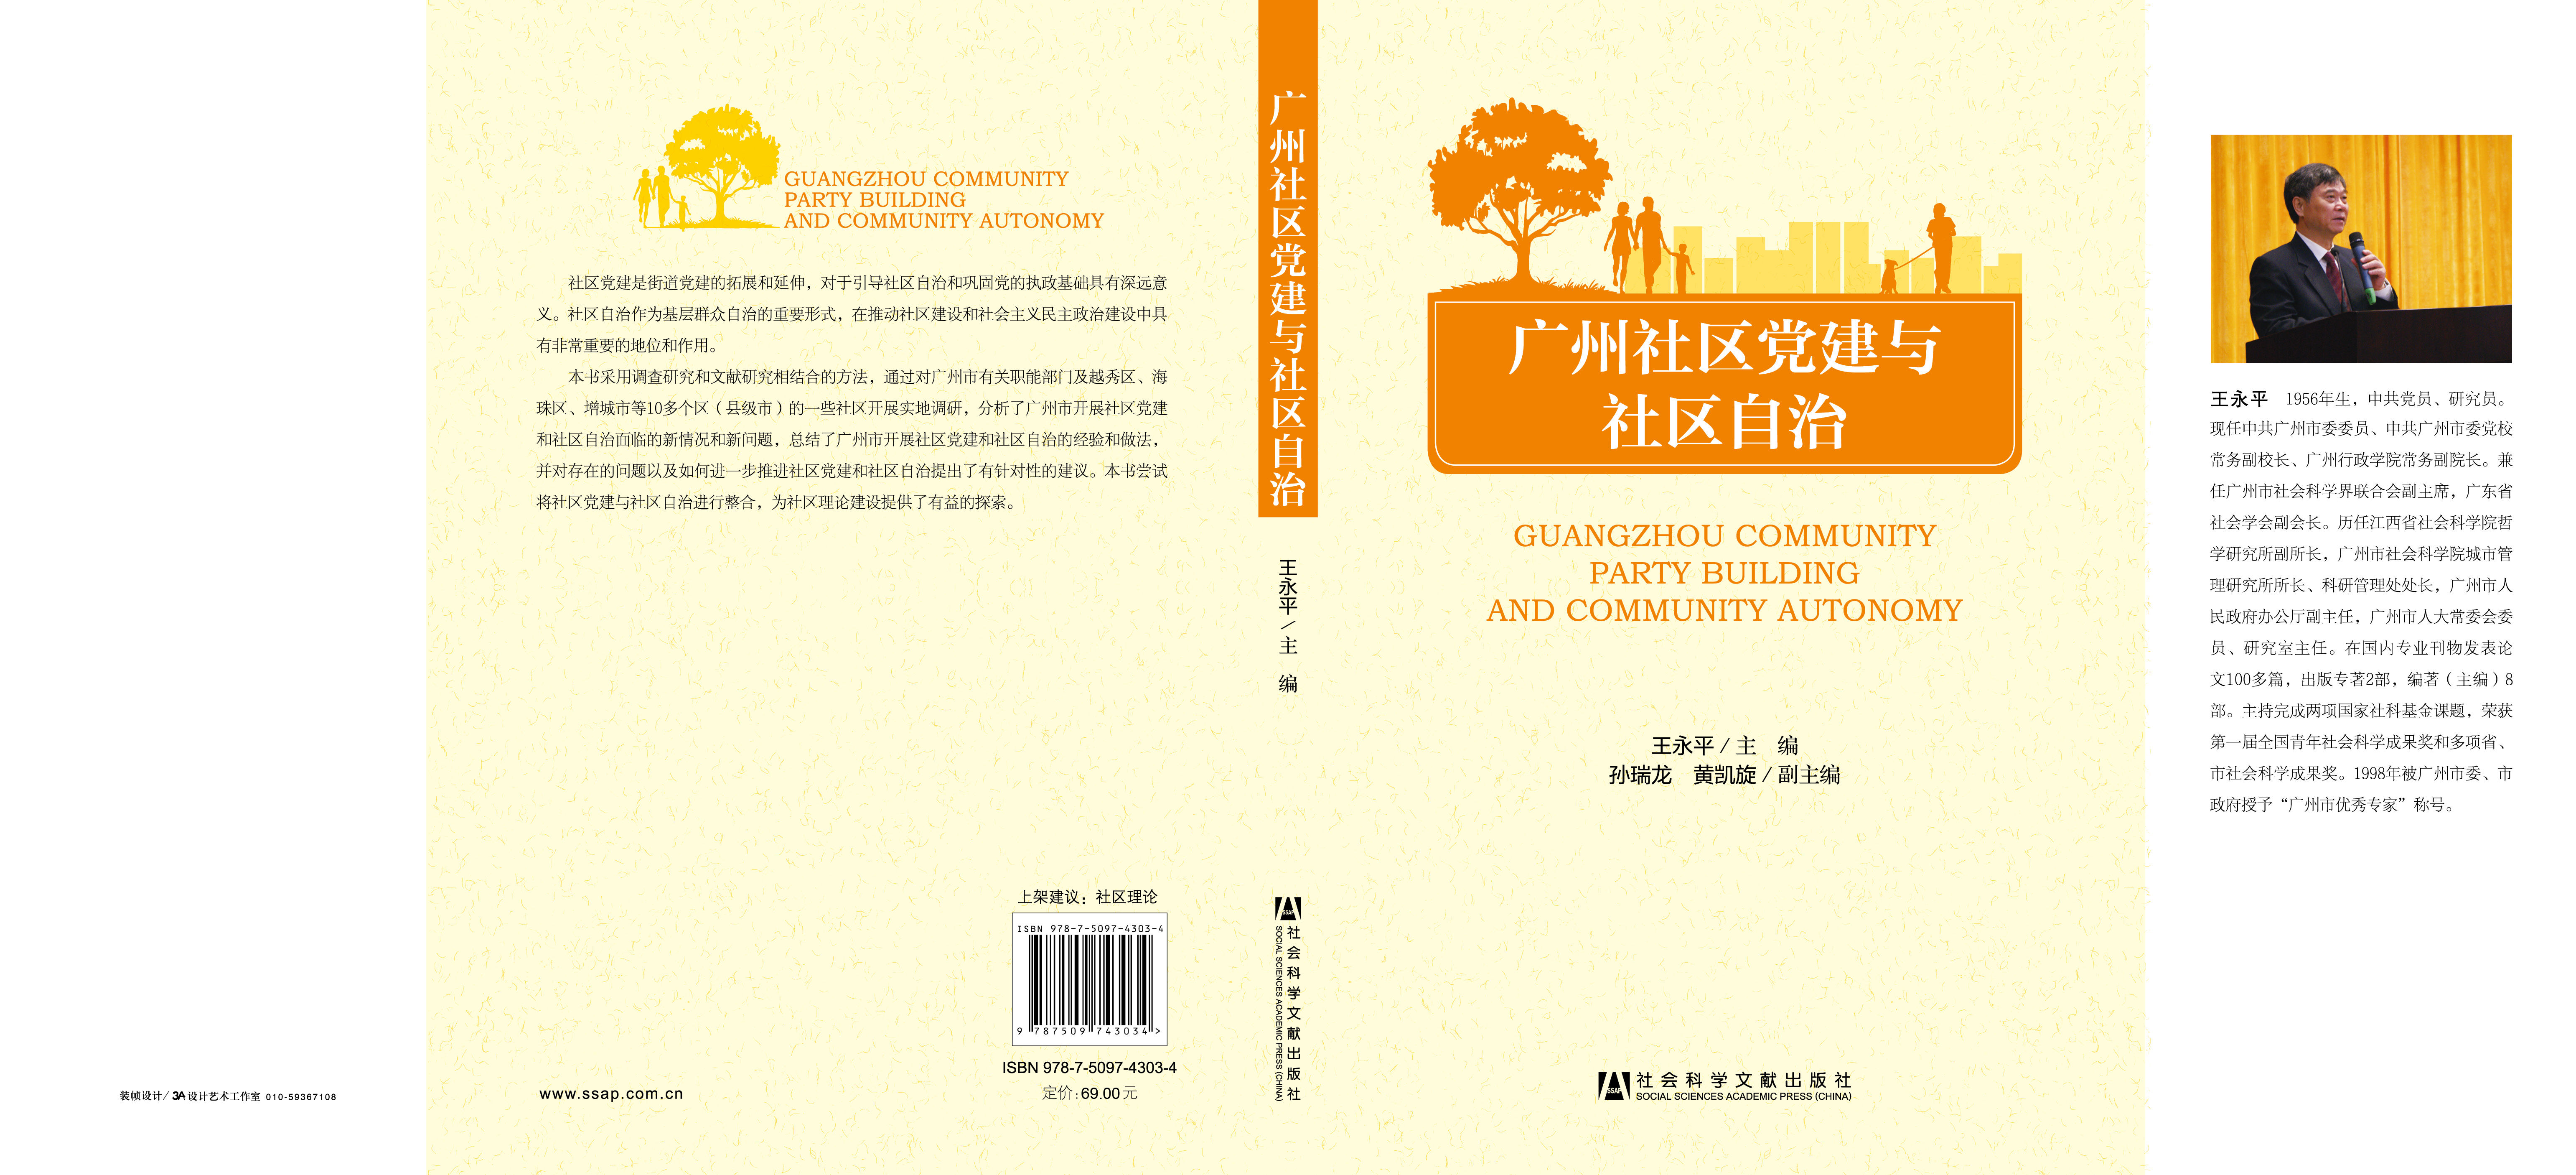 广州社区党建与社区自治